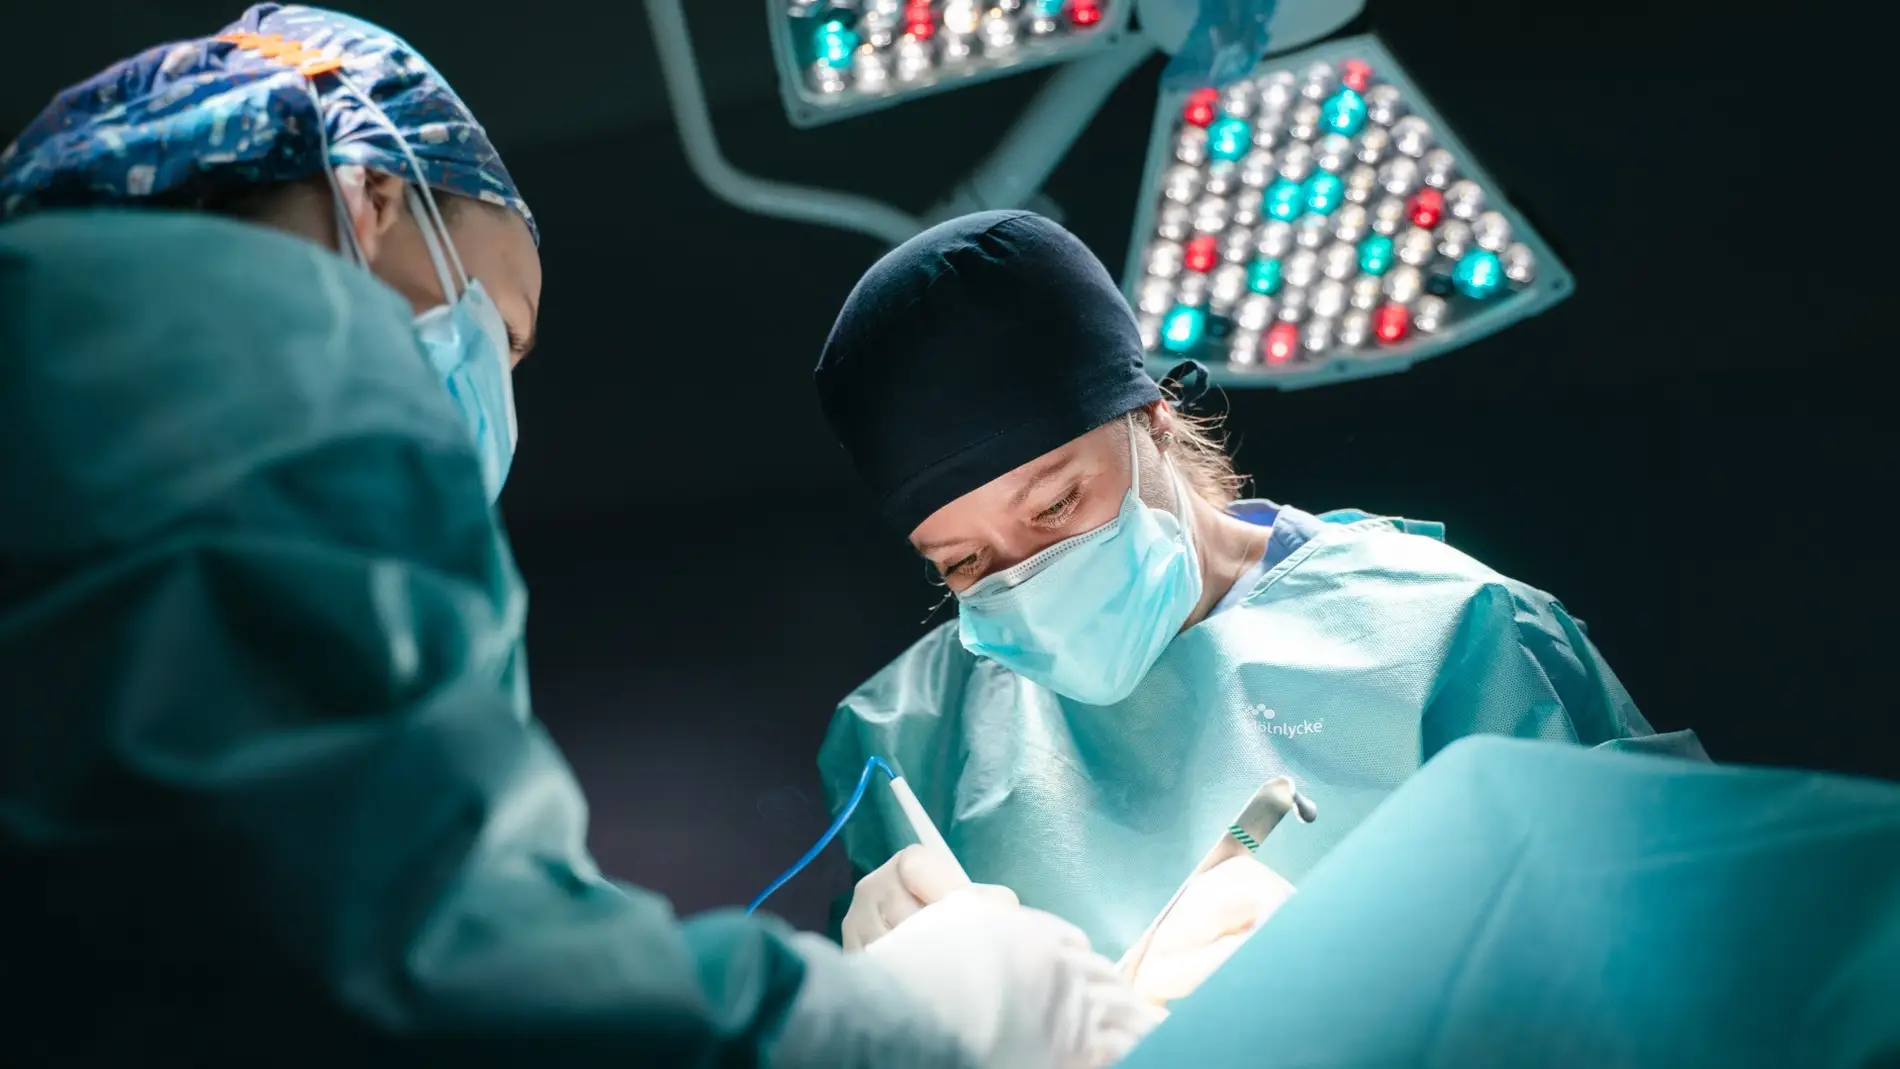 Los avances en cirugía de reconstrucción mamaria de Grupo Policlínica ofrecen cada vez más opciones en Ibiza tras una operación de cáncer de mama